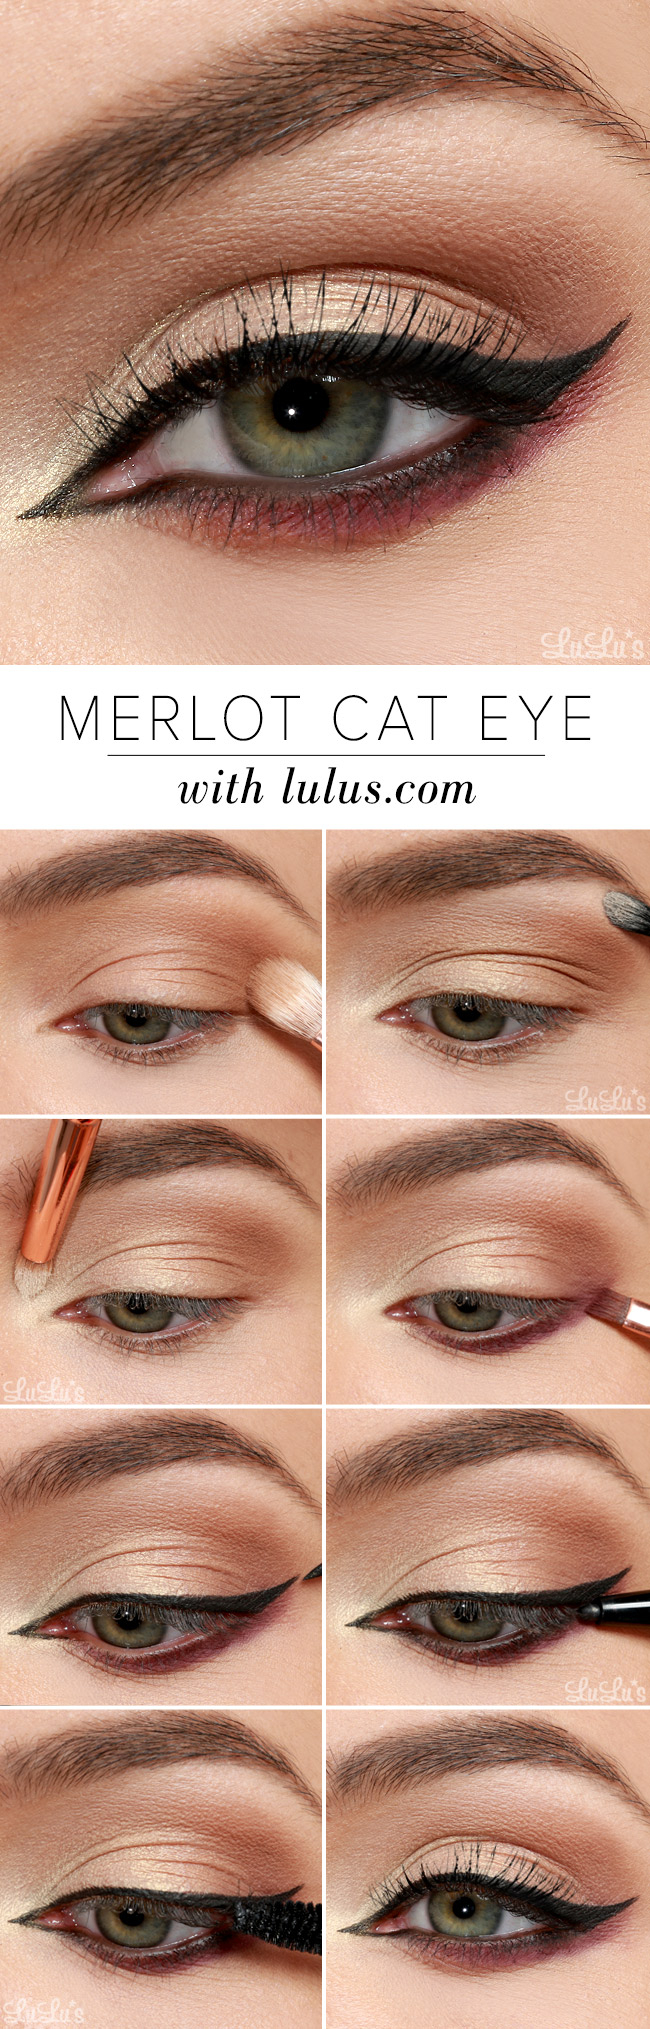 Makeup Cat Eyes Lulus How To Merlot Cat Eye Makeup Tutorial Lulus Fashion Blog